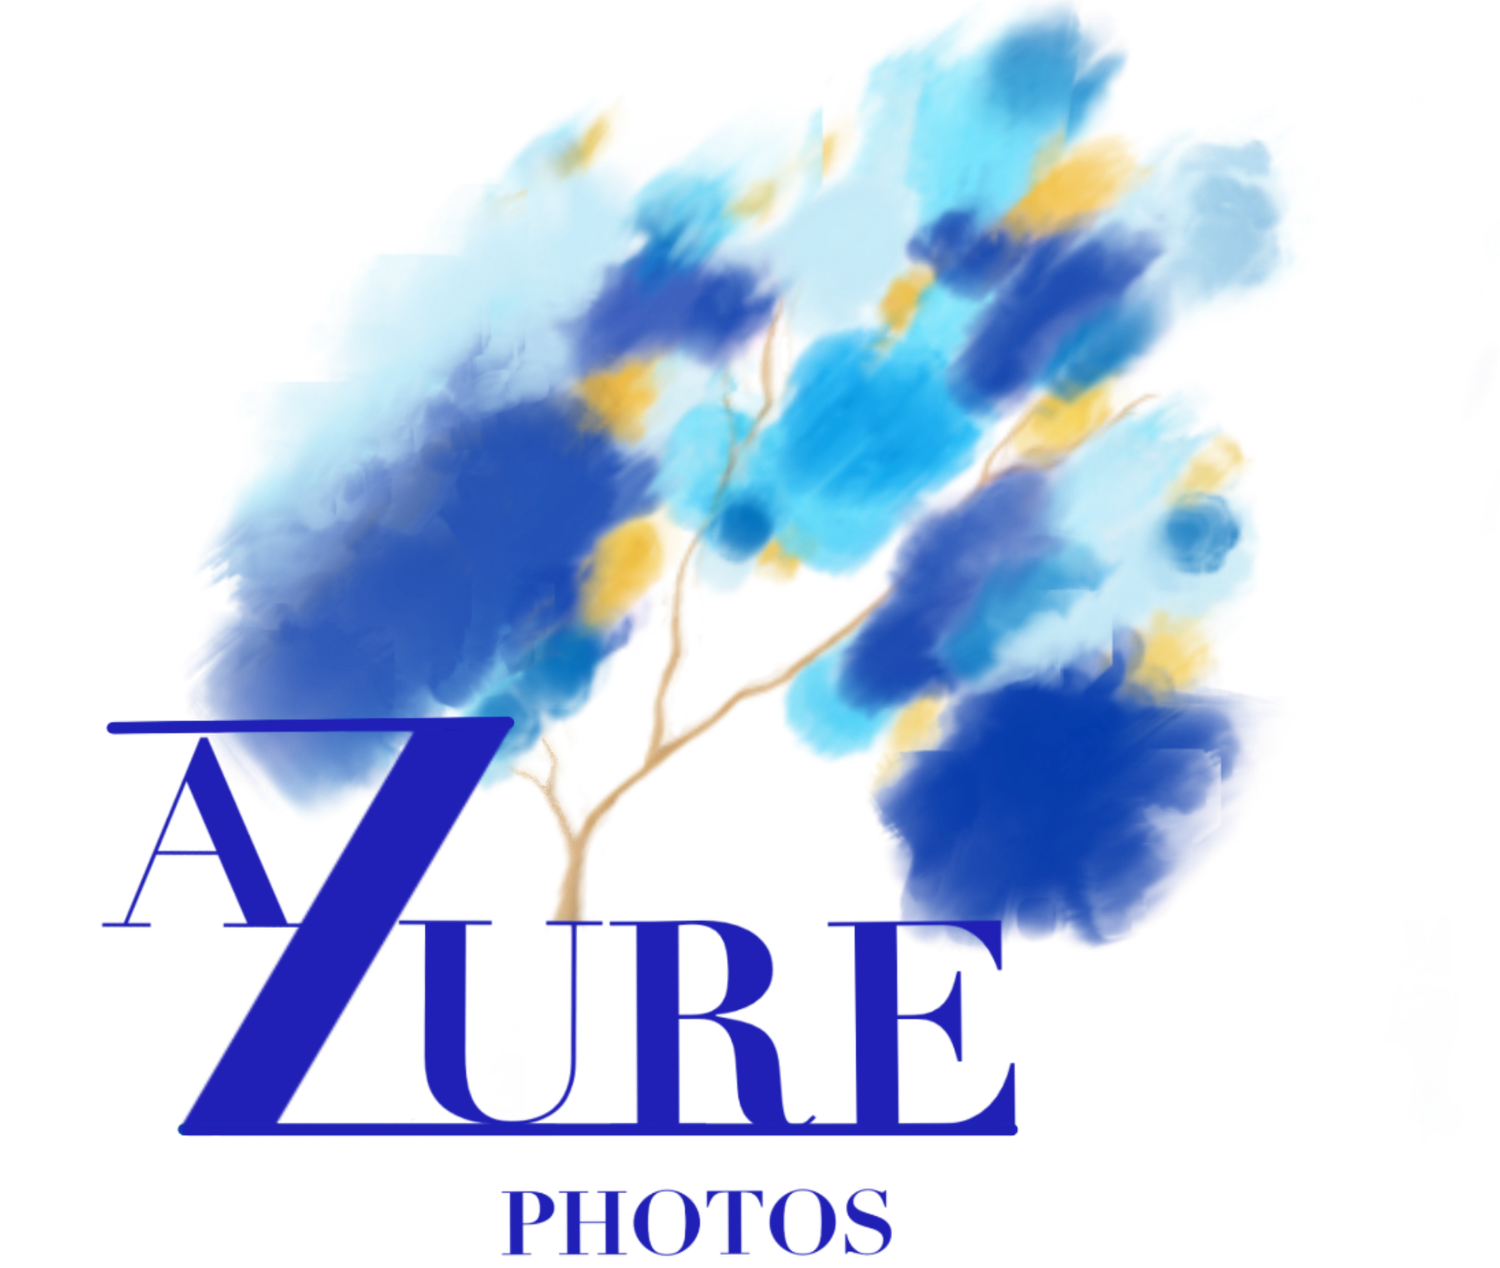 Azure Photography